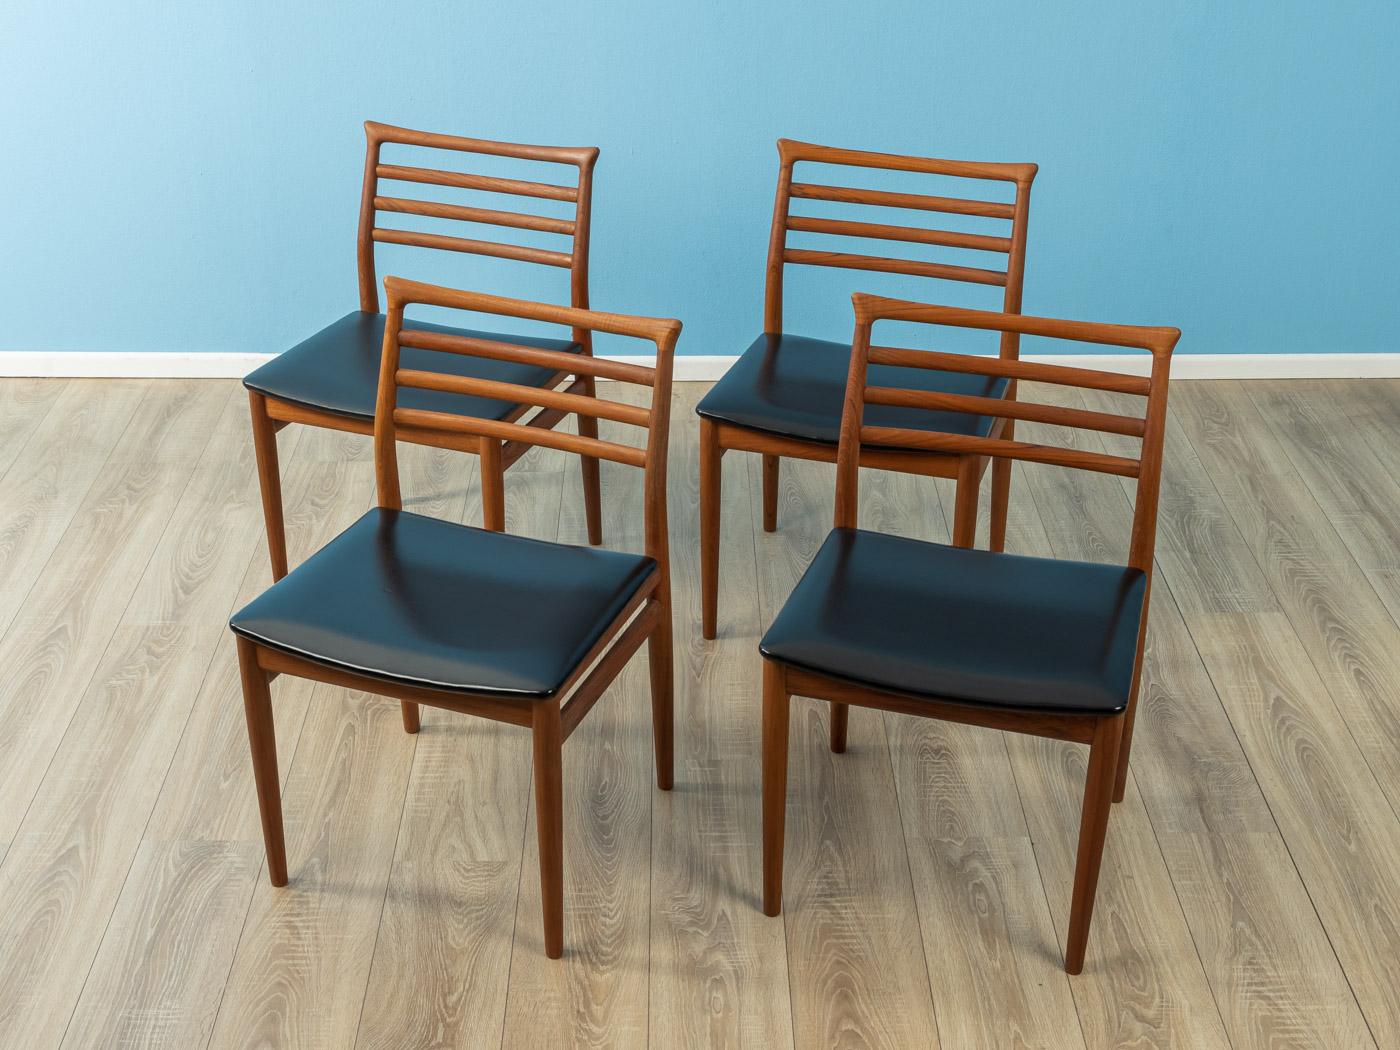 Klassische Stühle aus den 1960er Jahren von Erling Torvits für Sorø Stolefabrik. Das Gestell ist aus massivem Teakholz und der hochwertige Originalbezug aus schwarzem Kunstleder. Das Angebot umfasst vier Stühle.
Qualitätsmerkmale:

 Vollendetes